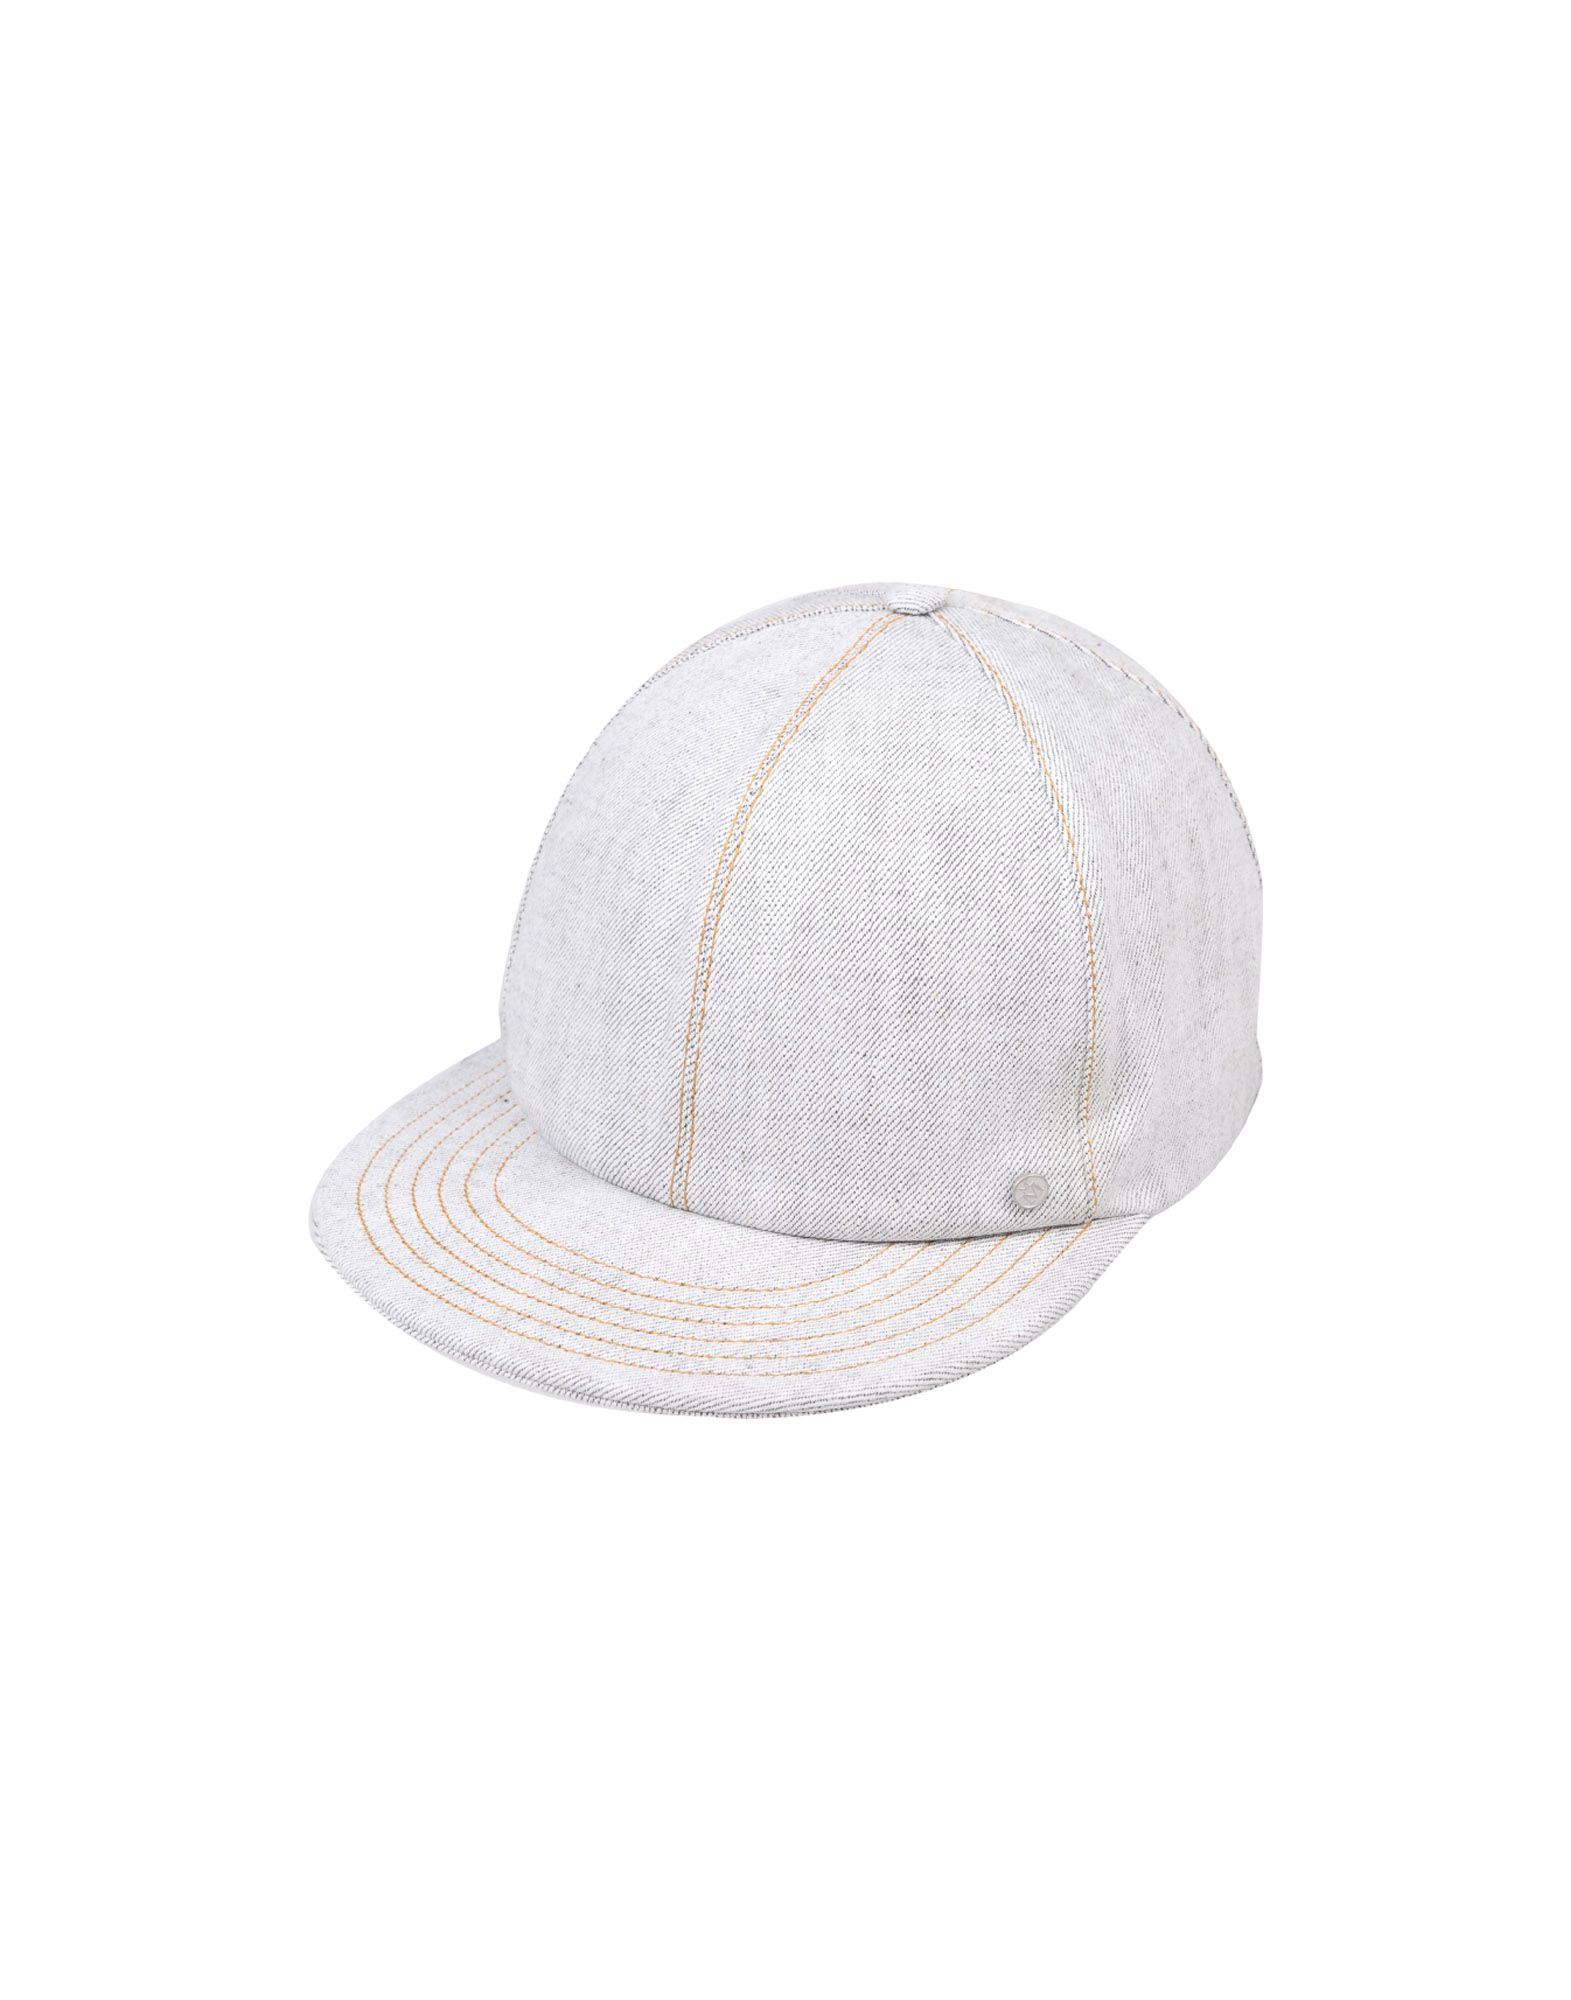 《送料無料》MAISON MICHEL メンズ 帽子 ライトグレー L 紡績繊維